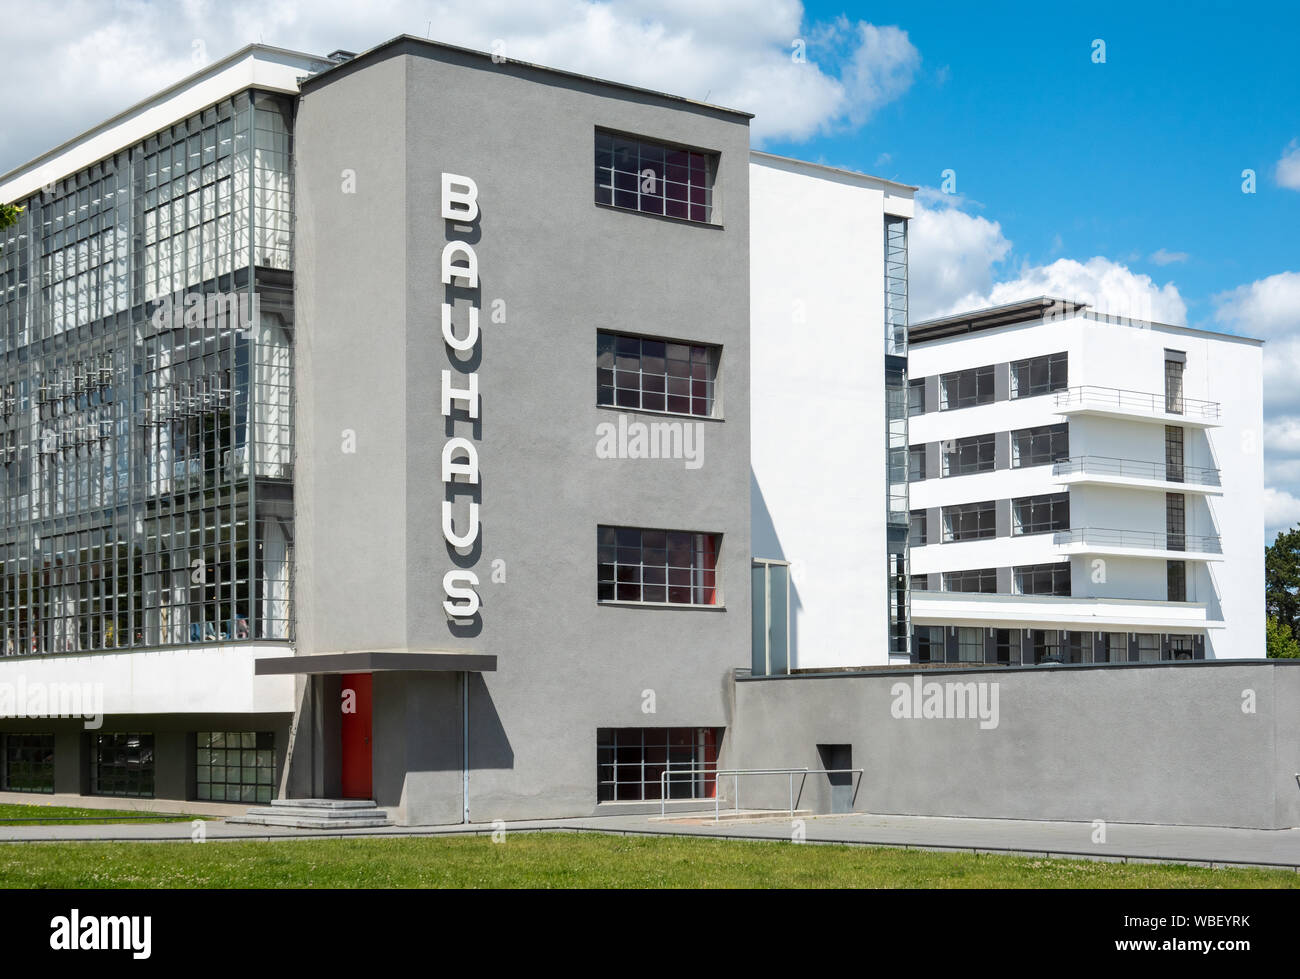 Le Bauhaus Dessau extérieur. Le bâtiment du Bauhaus à Dessau, Allemagne conçu par Walter Gropius en 1925 1926. Unesco World Heritage site. Banque D'Images